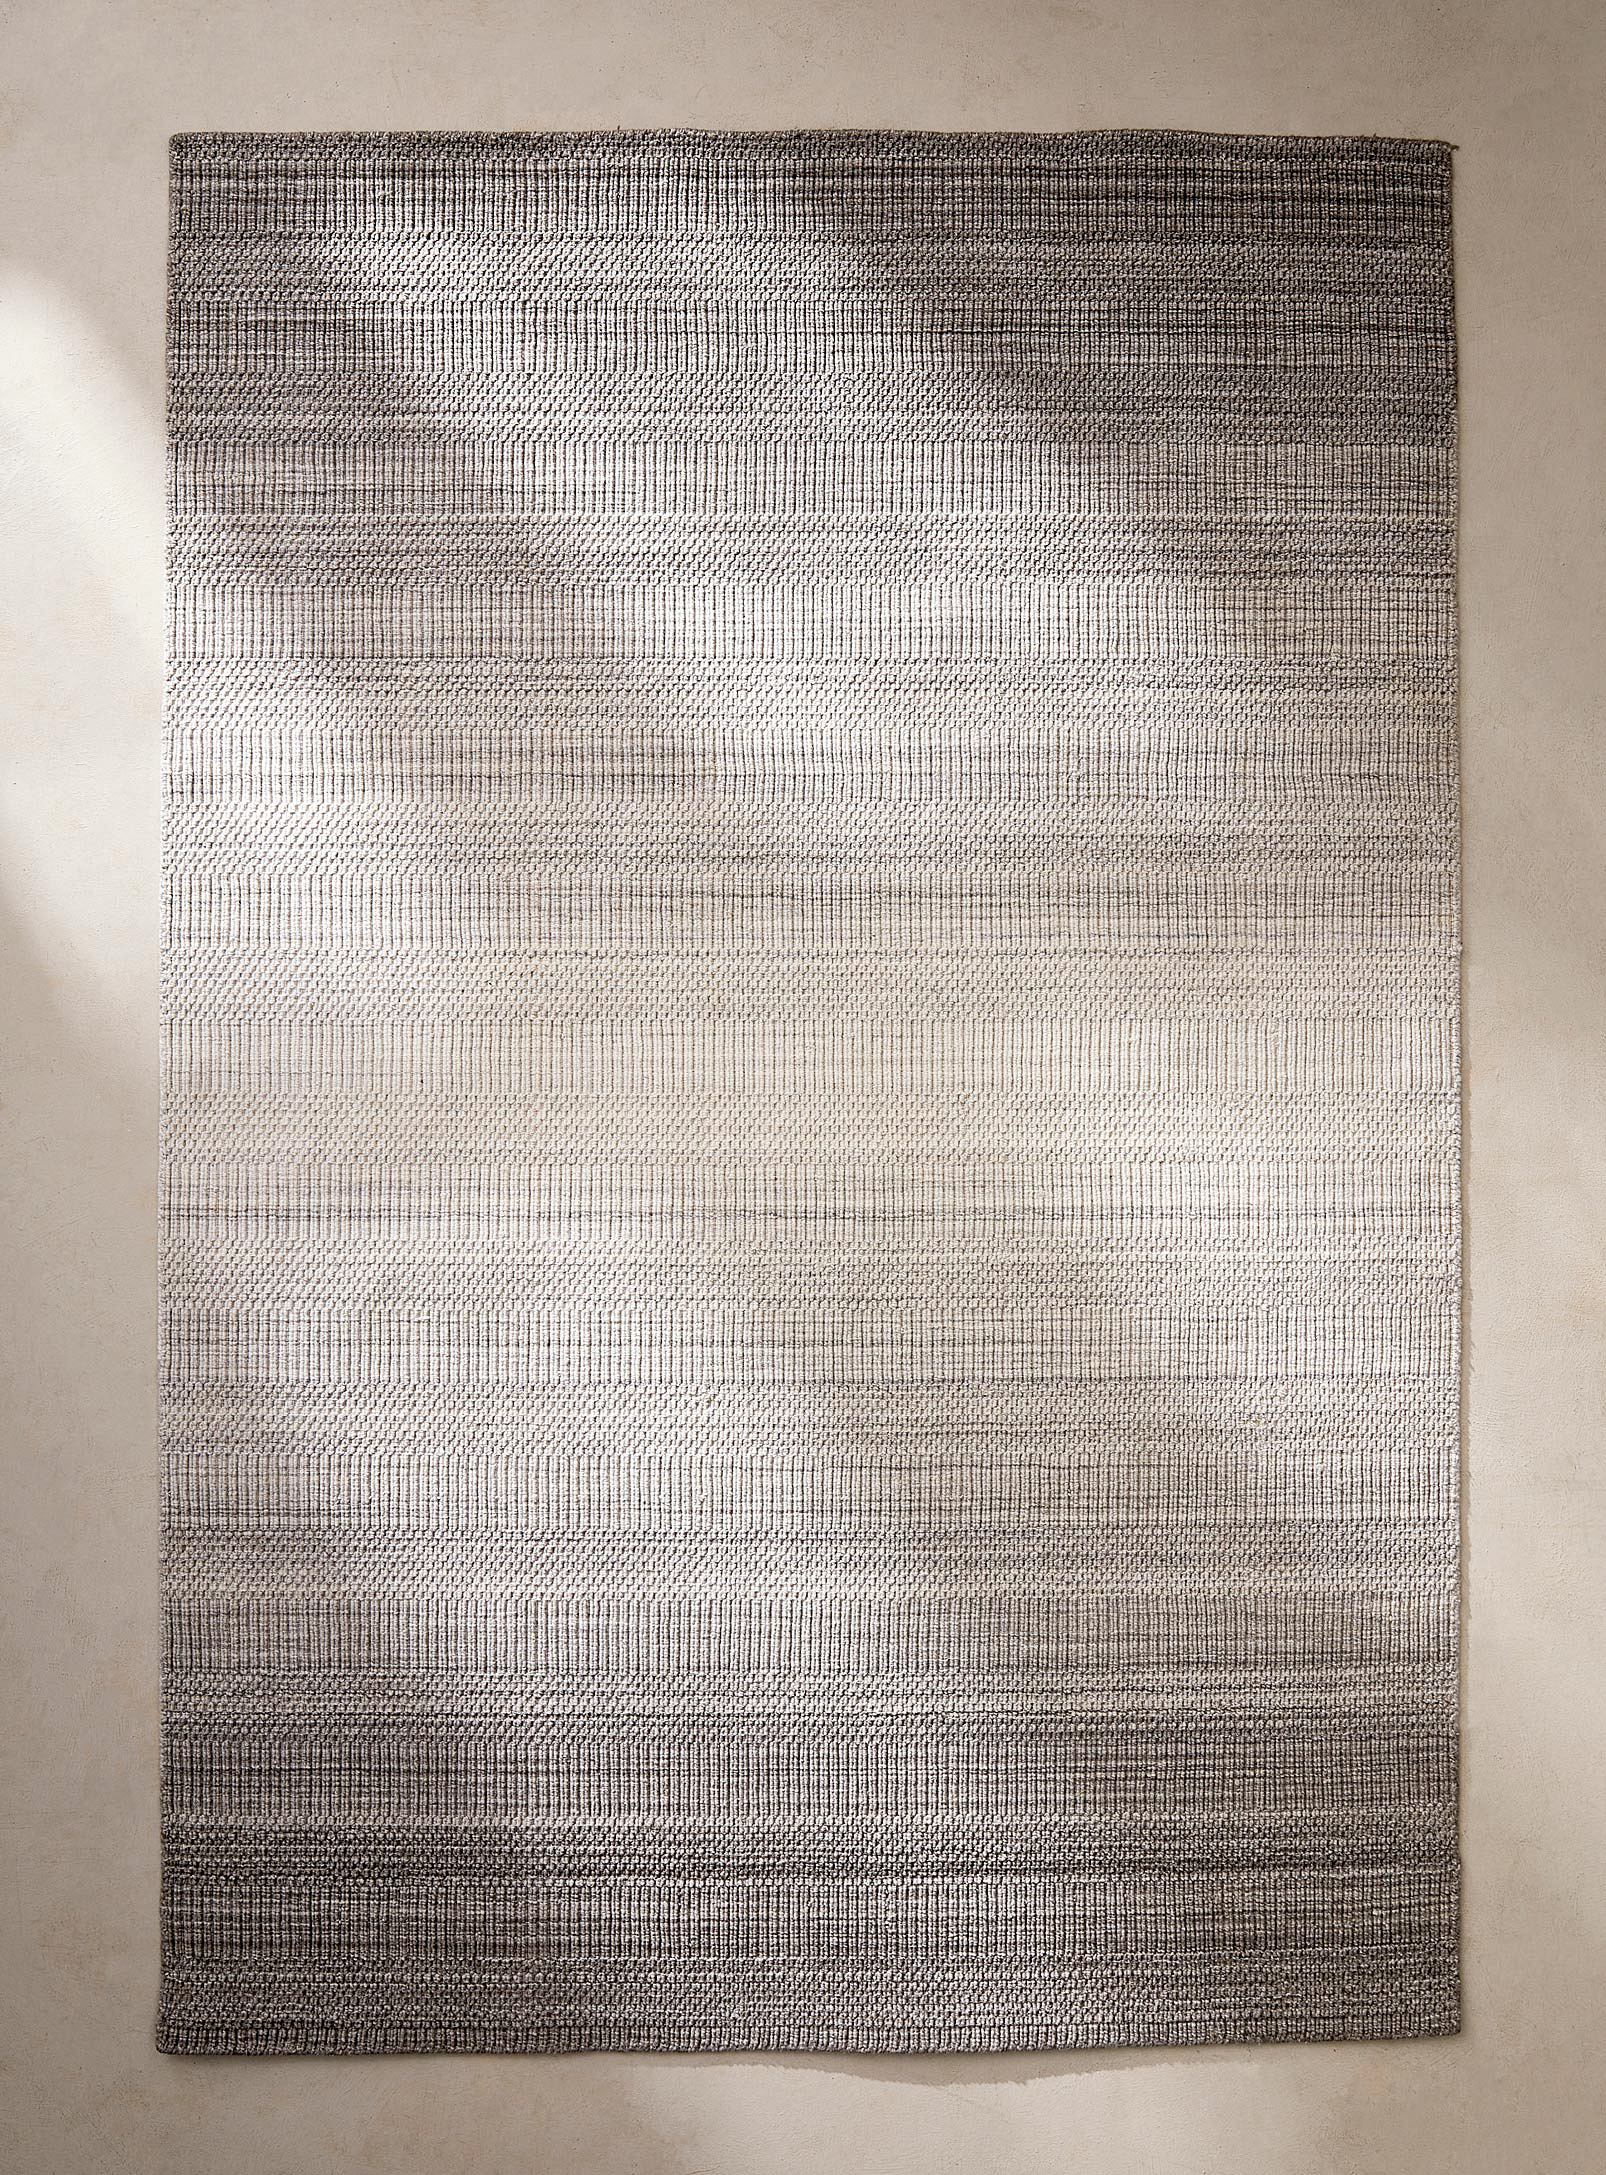 Simons Maison - Le tapis artisanal nuancé polyester recyclé Voir nos formats offerts